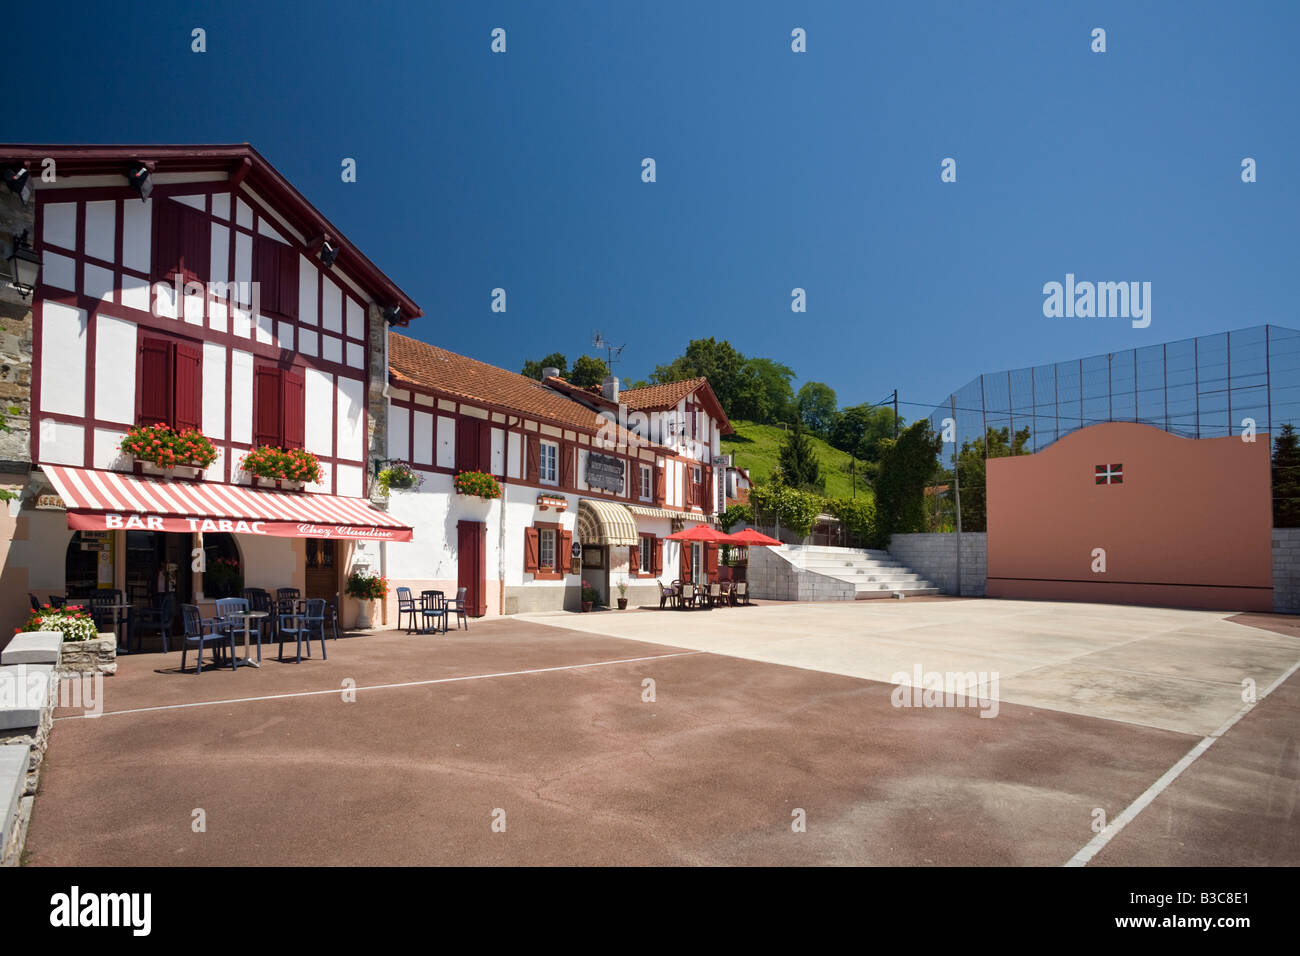 Baskische Häuser und eine Stirnwand Cambo-Les-Bains (Frankreich). Maisons et Fronton de Pelote Basque, À Cambo-Les-Bains (Frankreich). Stockfoto